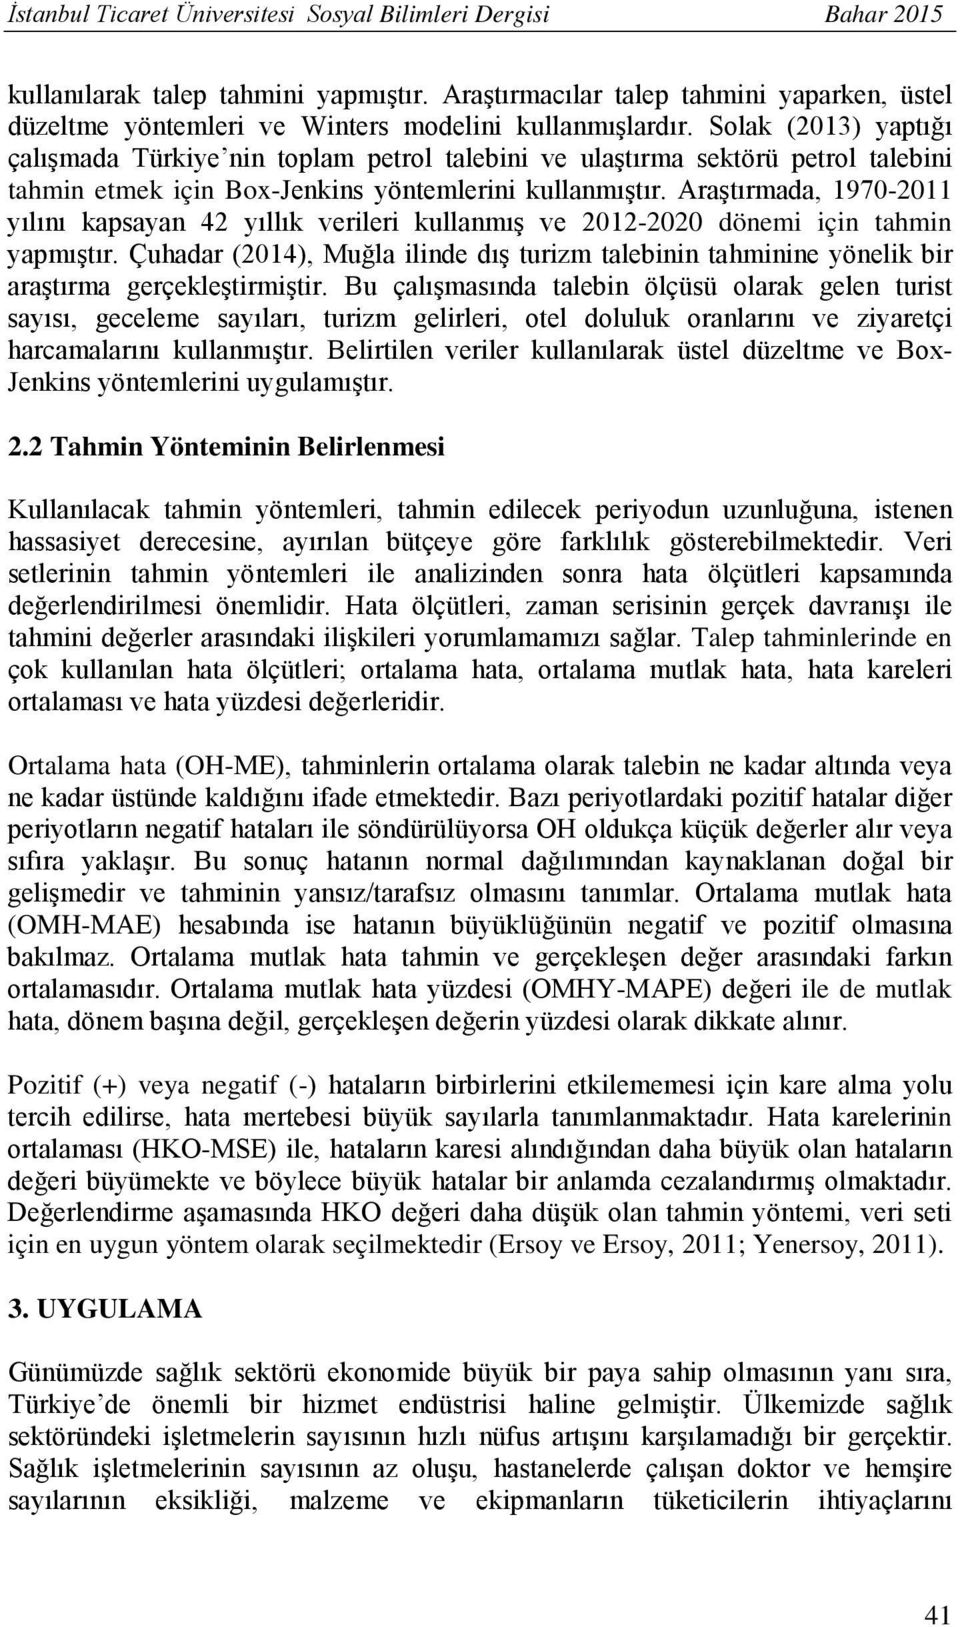 Solak (2013) yaptığı çalışmada Türkiye nin toplam petrol talebini ve ulaştırma sektörü petrol talebini tahmin etmek için Box-Jenkins yöntemlerini kullanmıştır.